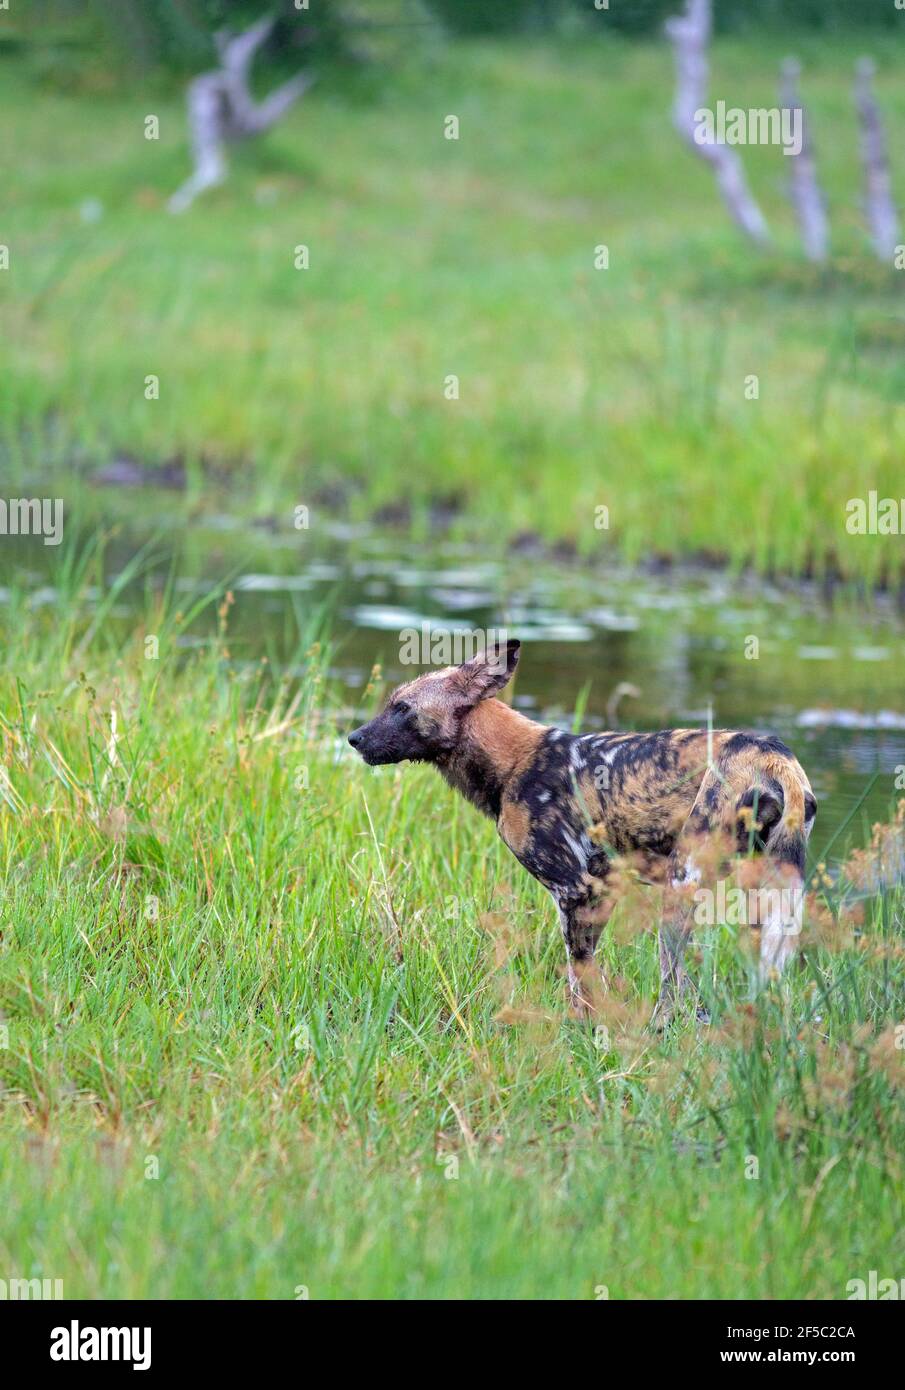 Cane selvatico africano di caccia o lupo dipinto (Lycaon pictus). Circa lasciare un canale d'acqua avendo avuto una bevanda, soddisfacente, dissetante sete, Botswana. Foto Stock